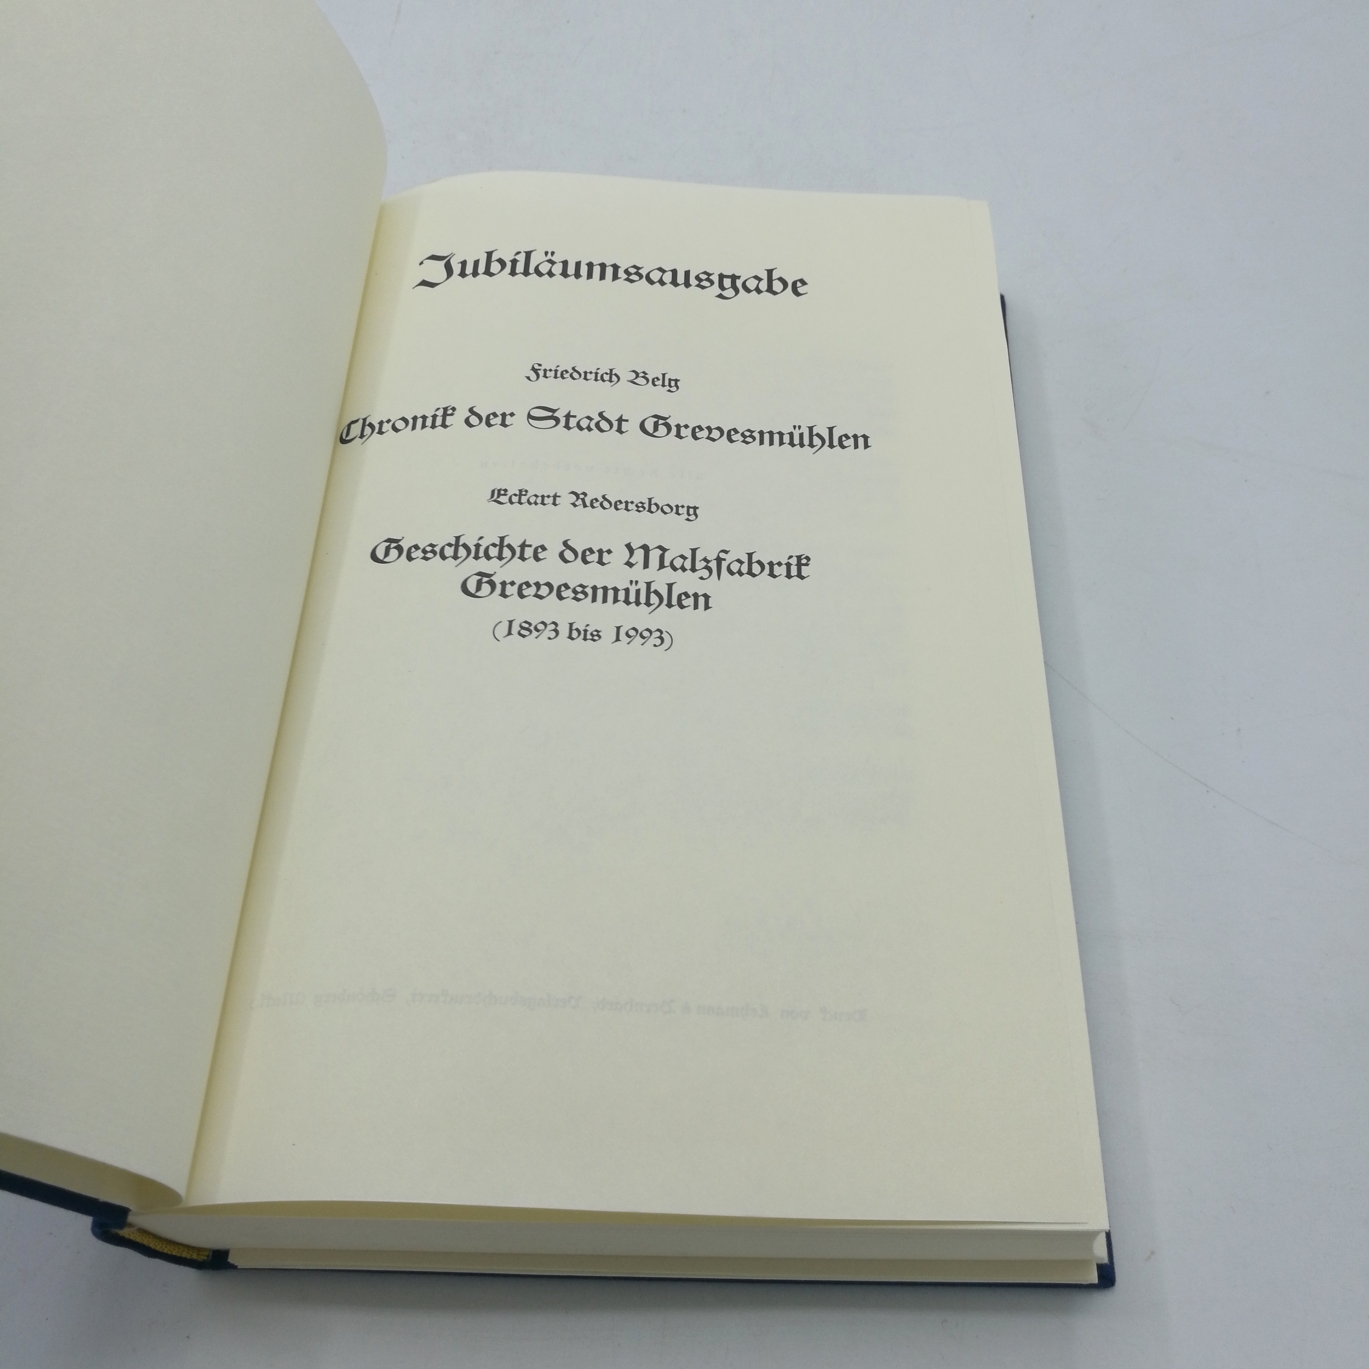 Friedrich Belg: Chronik der Stadt Grevensmühlen. Jubiläumsausgabe. Eckart RedersborgGeschichte der Malfabrik Grevesmühlen (1893 bis 1993).